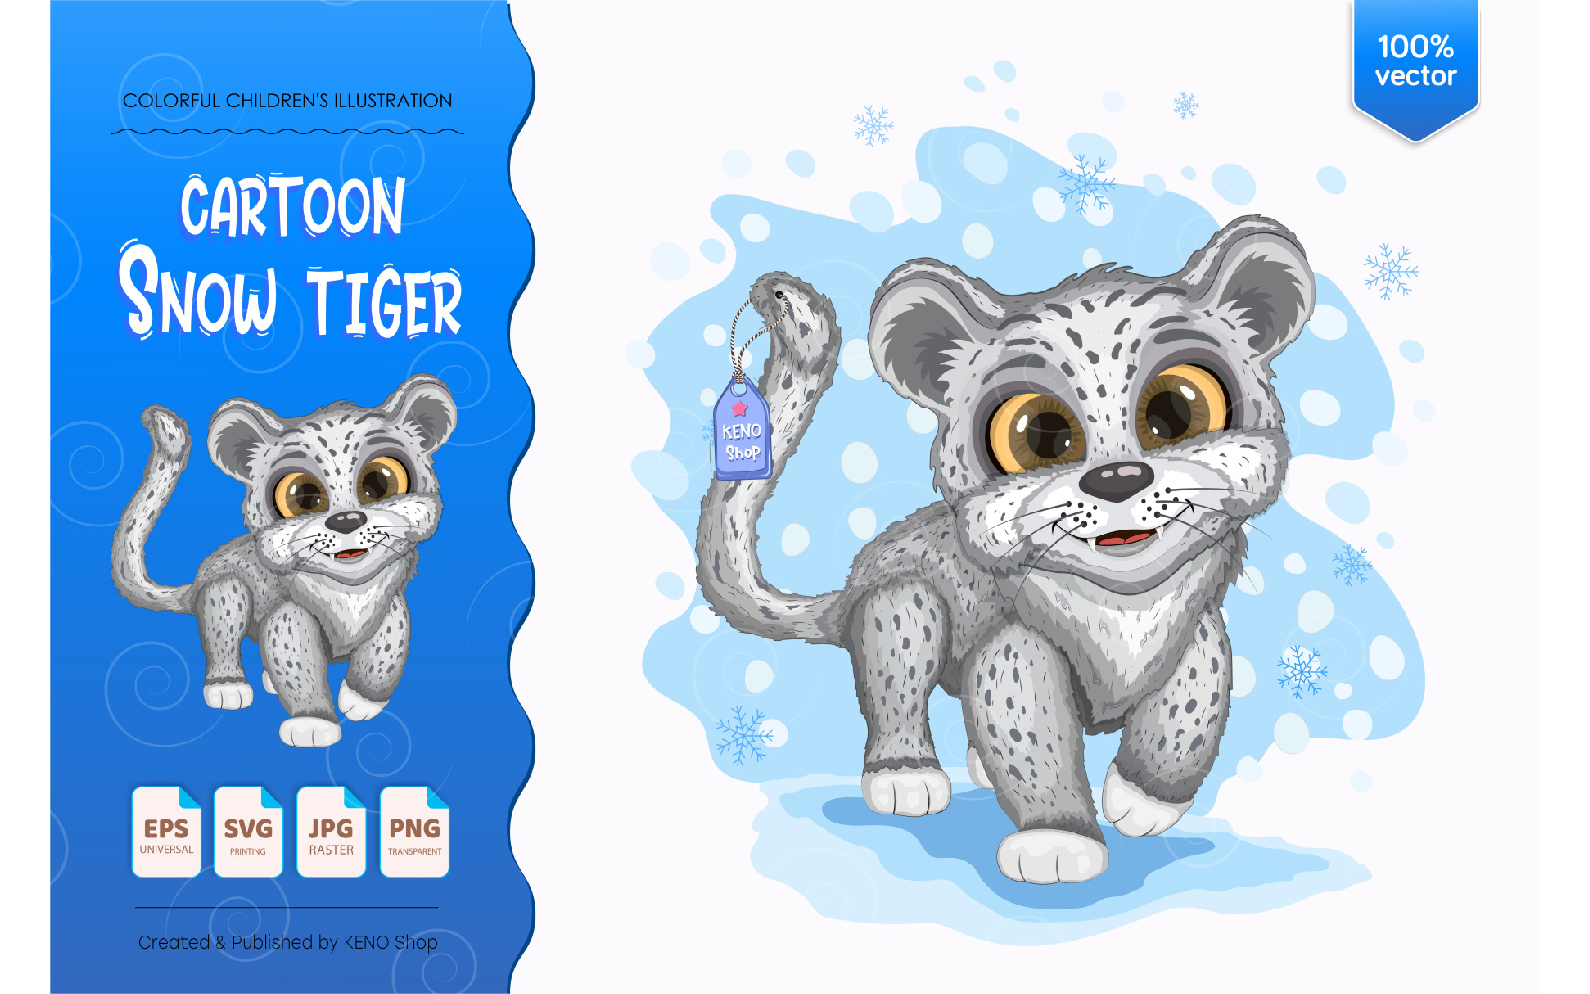 Cartoon Snow Tiger - Vector Image